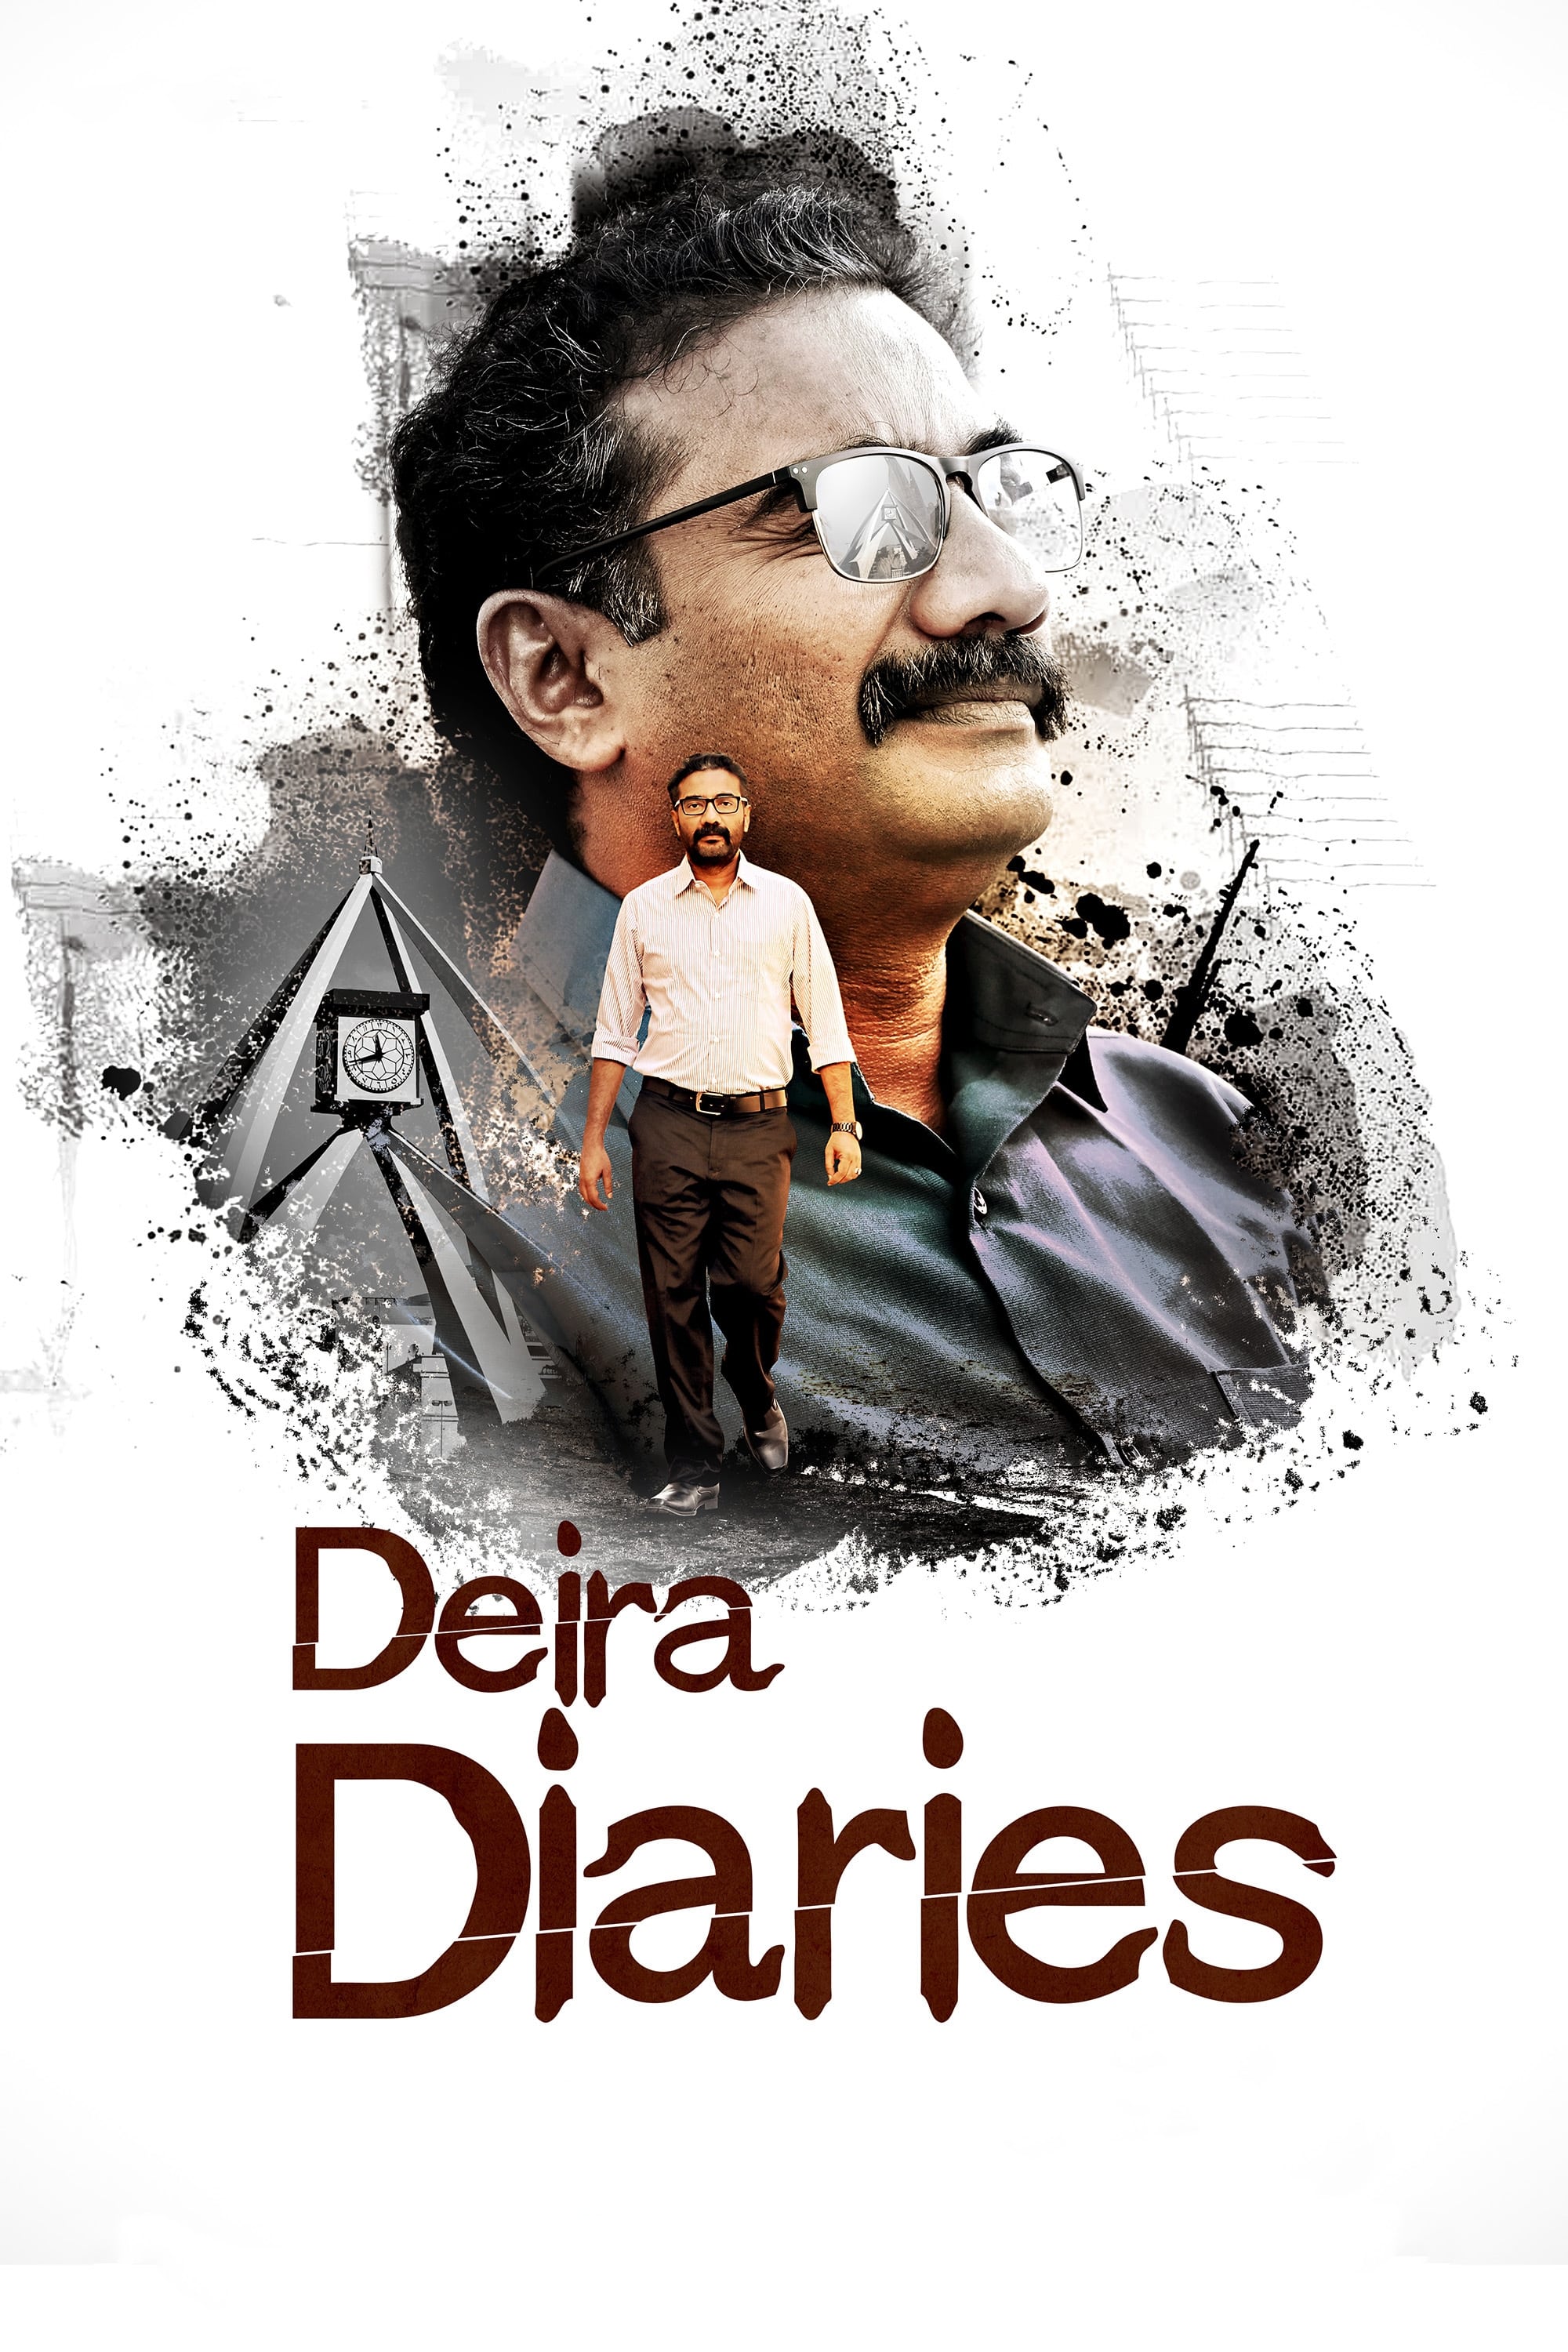 Deira Diaries